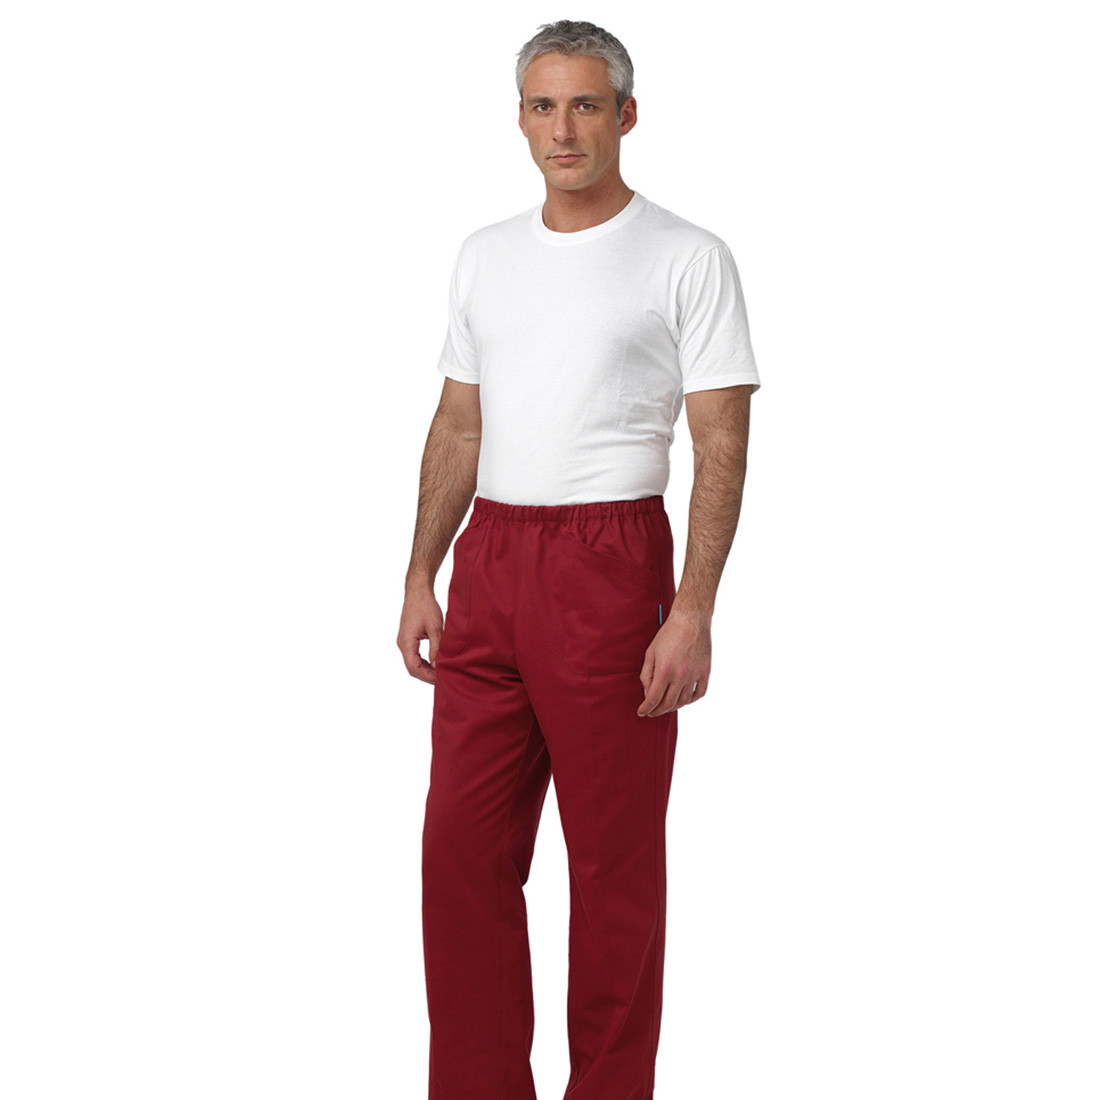 Pantalón médico STAR II unisex - Ropa de protección